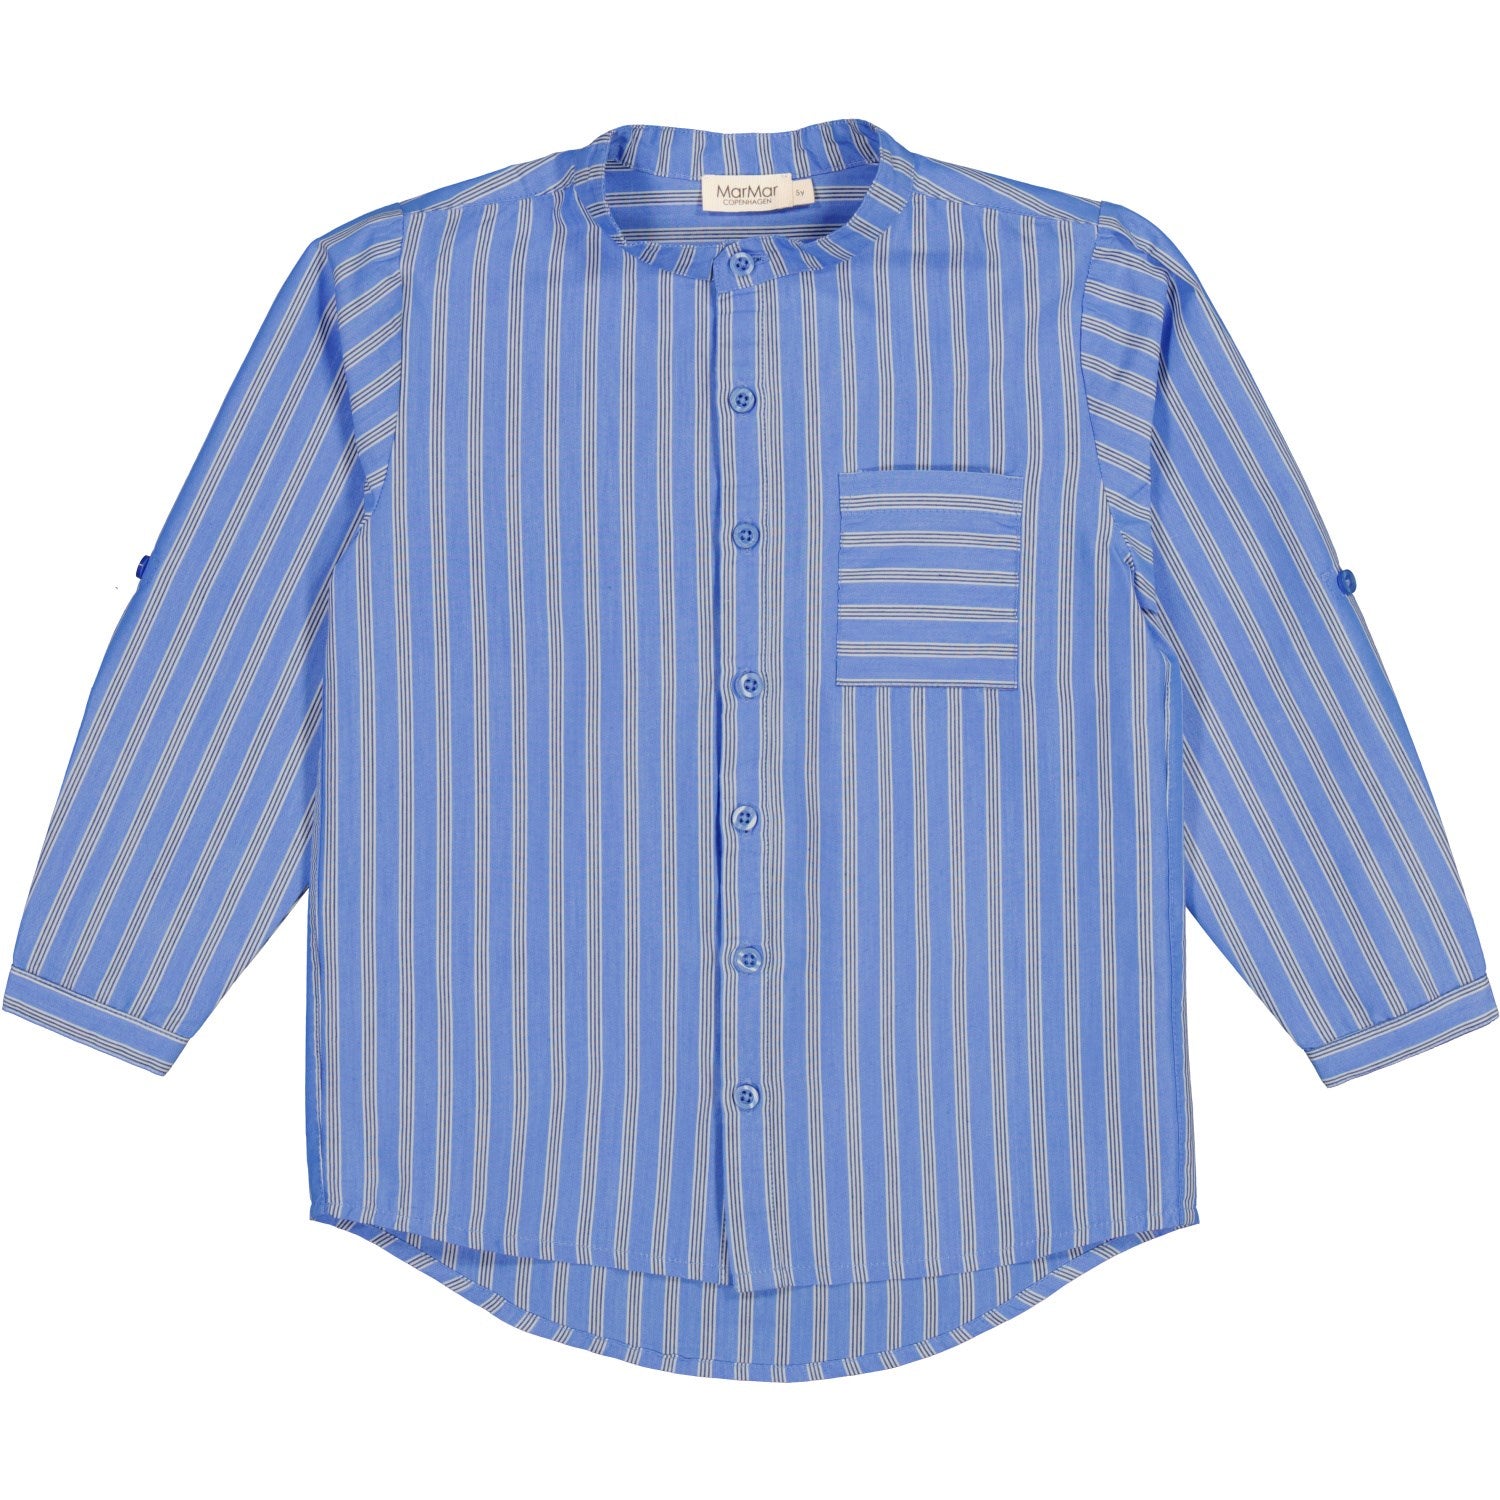 MarMar Smooth Cotton Cornflower Stripe Theodor Shirt